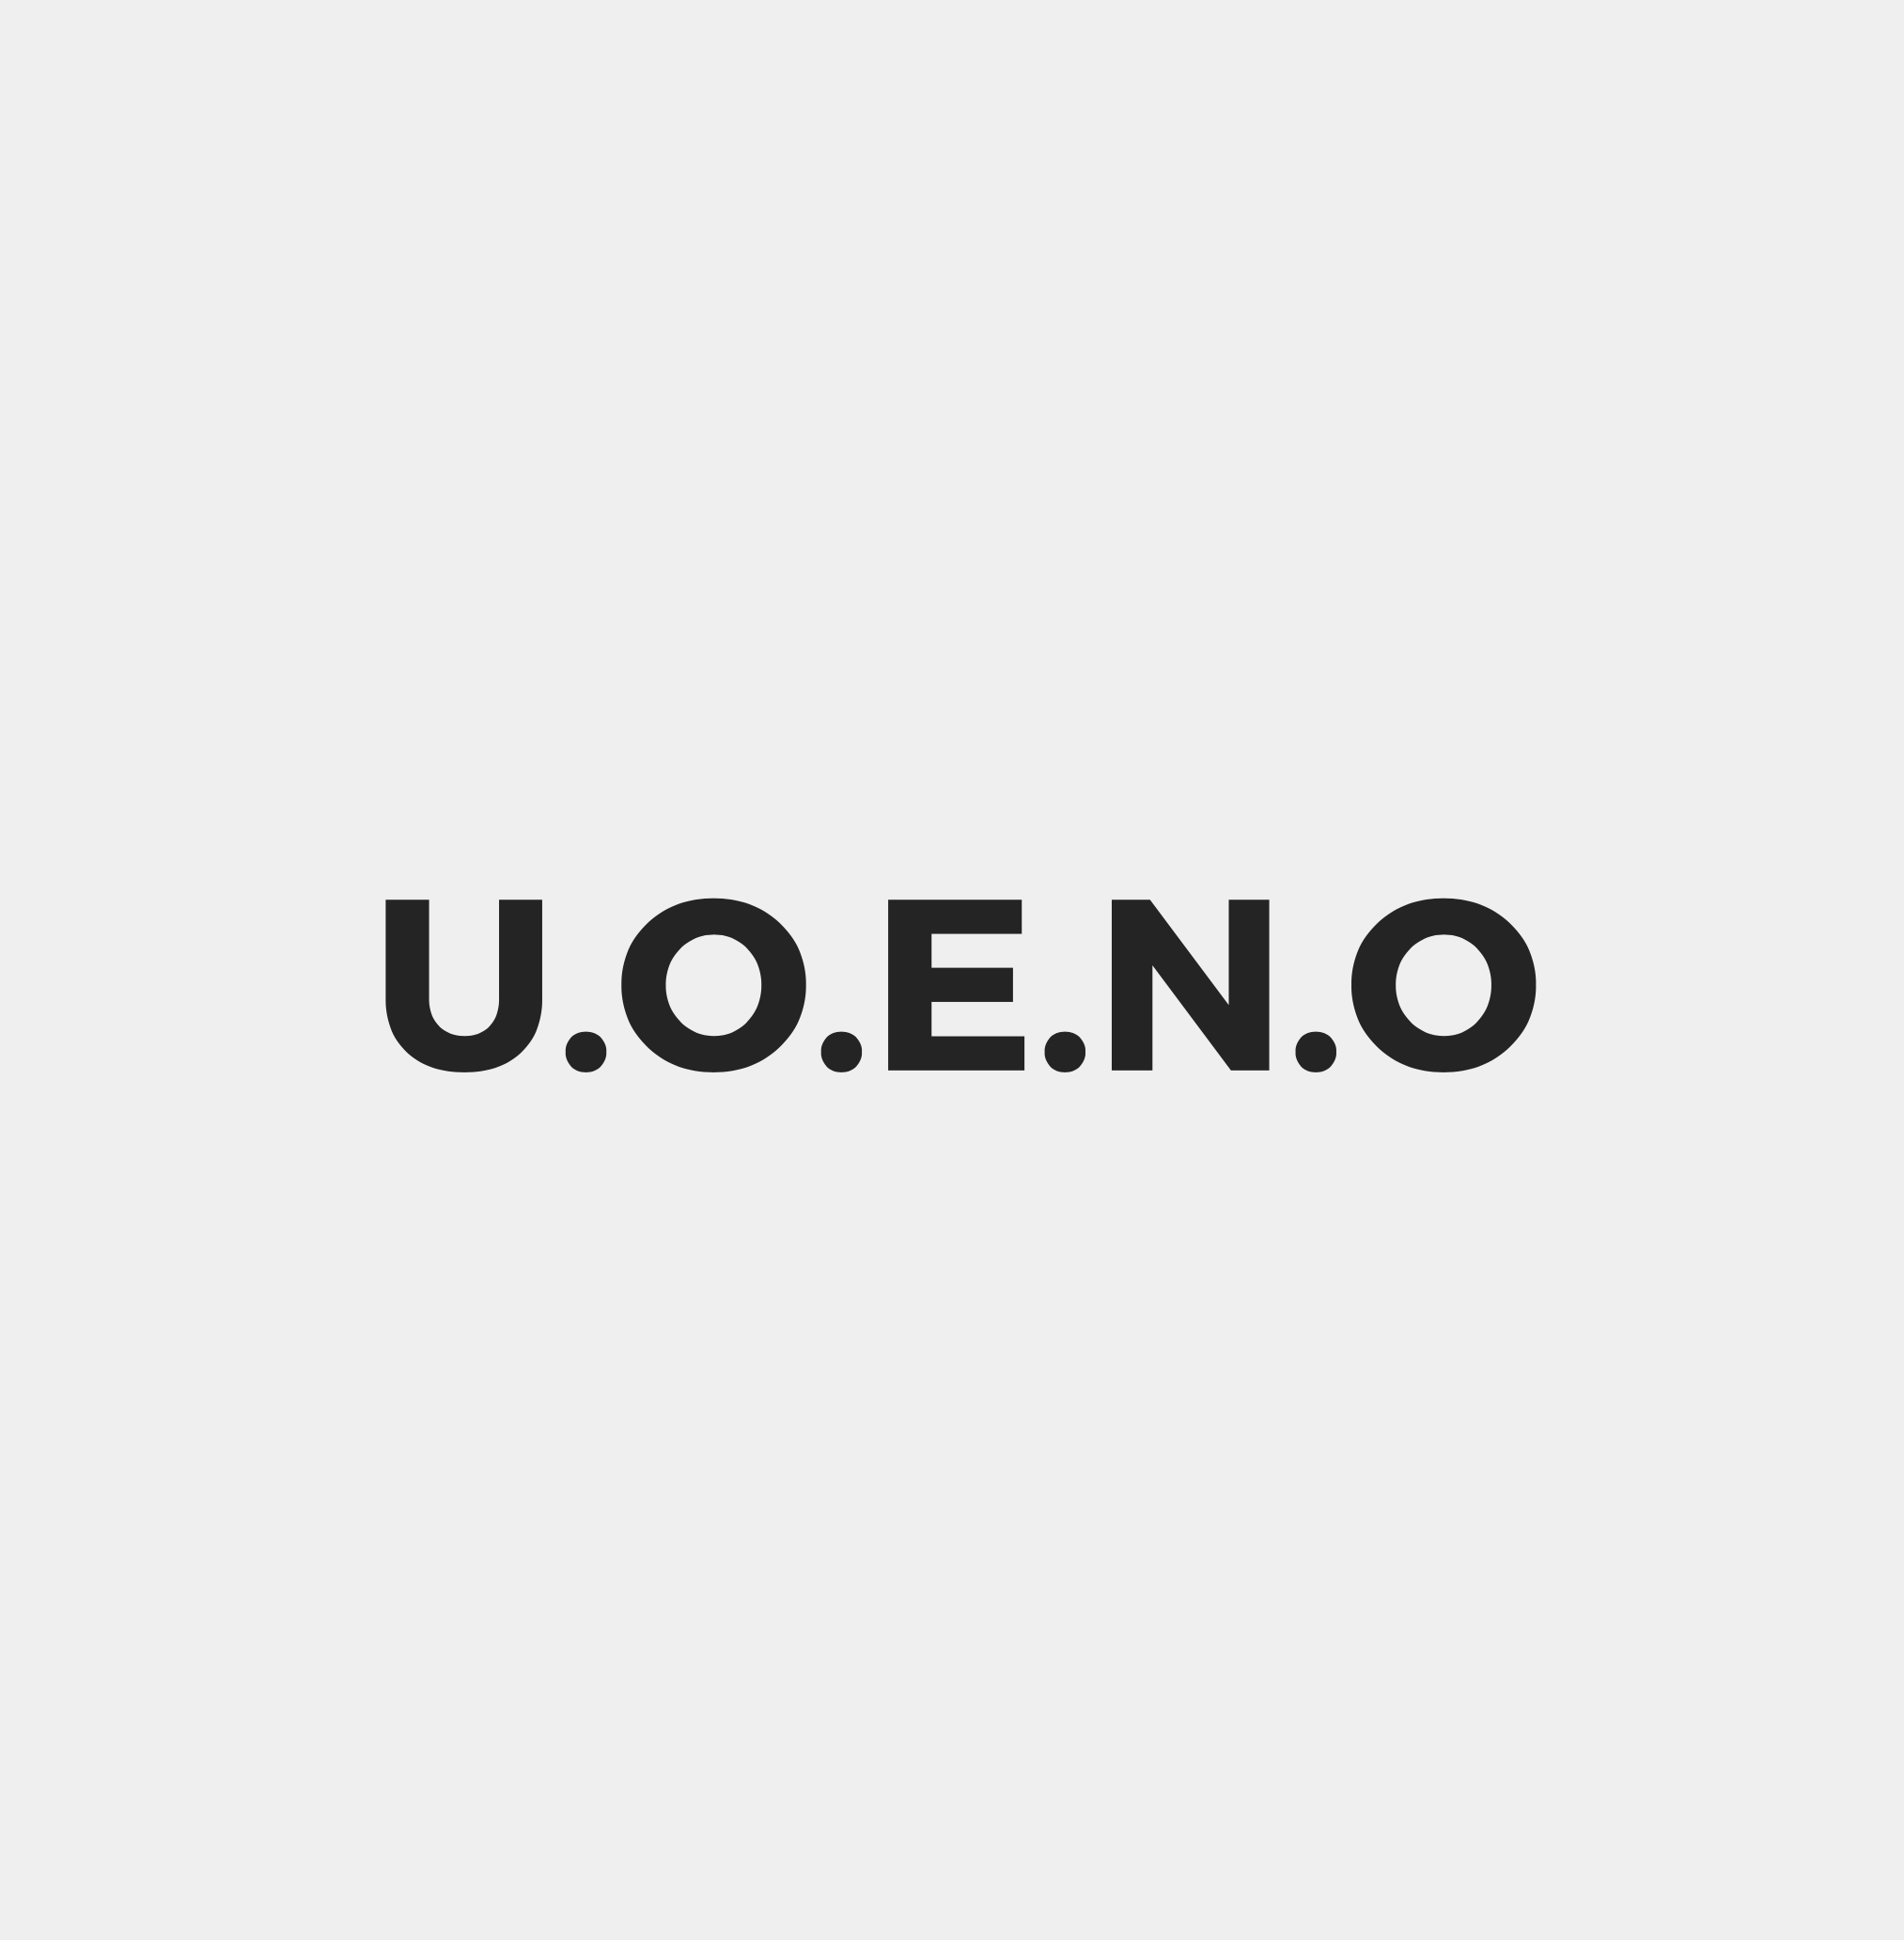 Profile picture of Uoeno